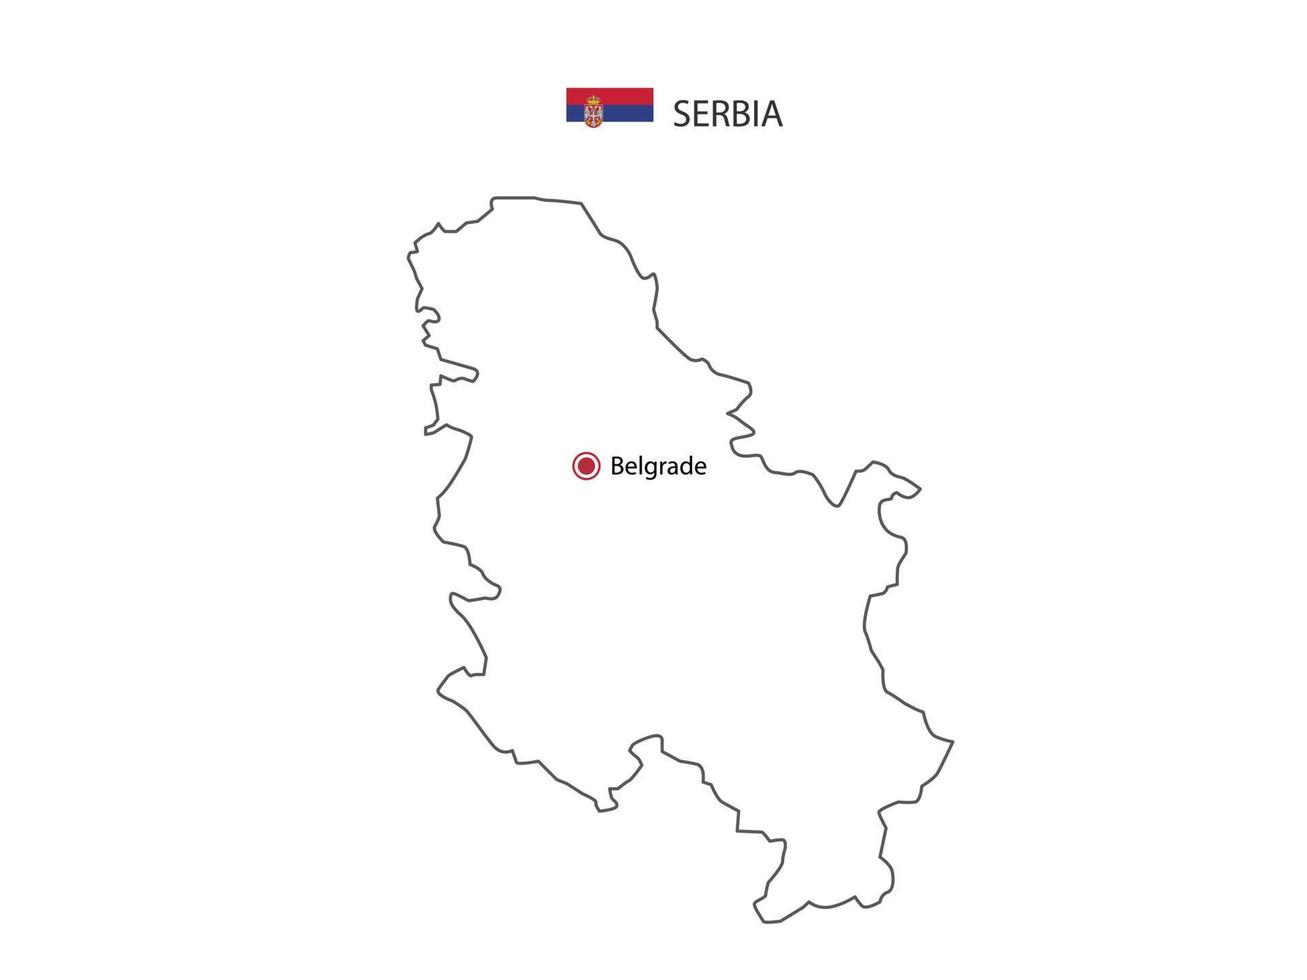 mano disegnare magro nero linea vettore di Serbia carta geografica con capitale città belgrado su bianca sfondo.